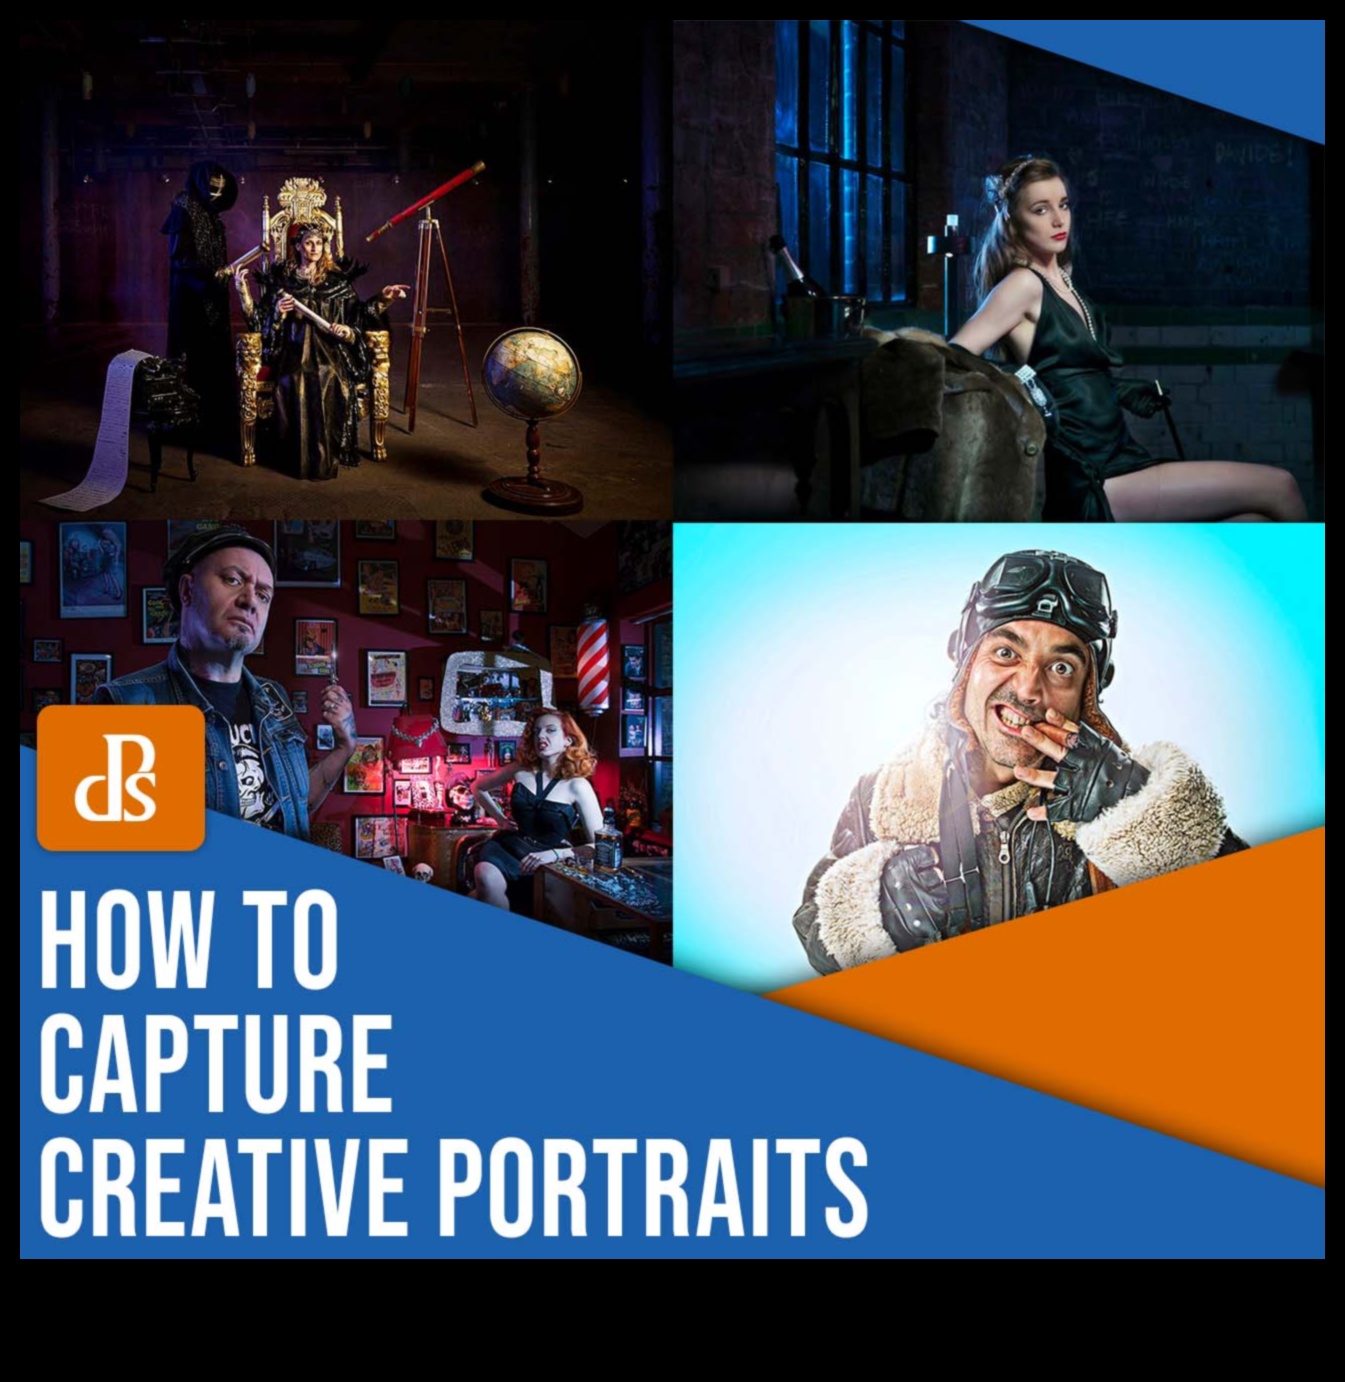 Capturarea creativității: creșteți-vă abilitățile cu tutoriale de fotografie